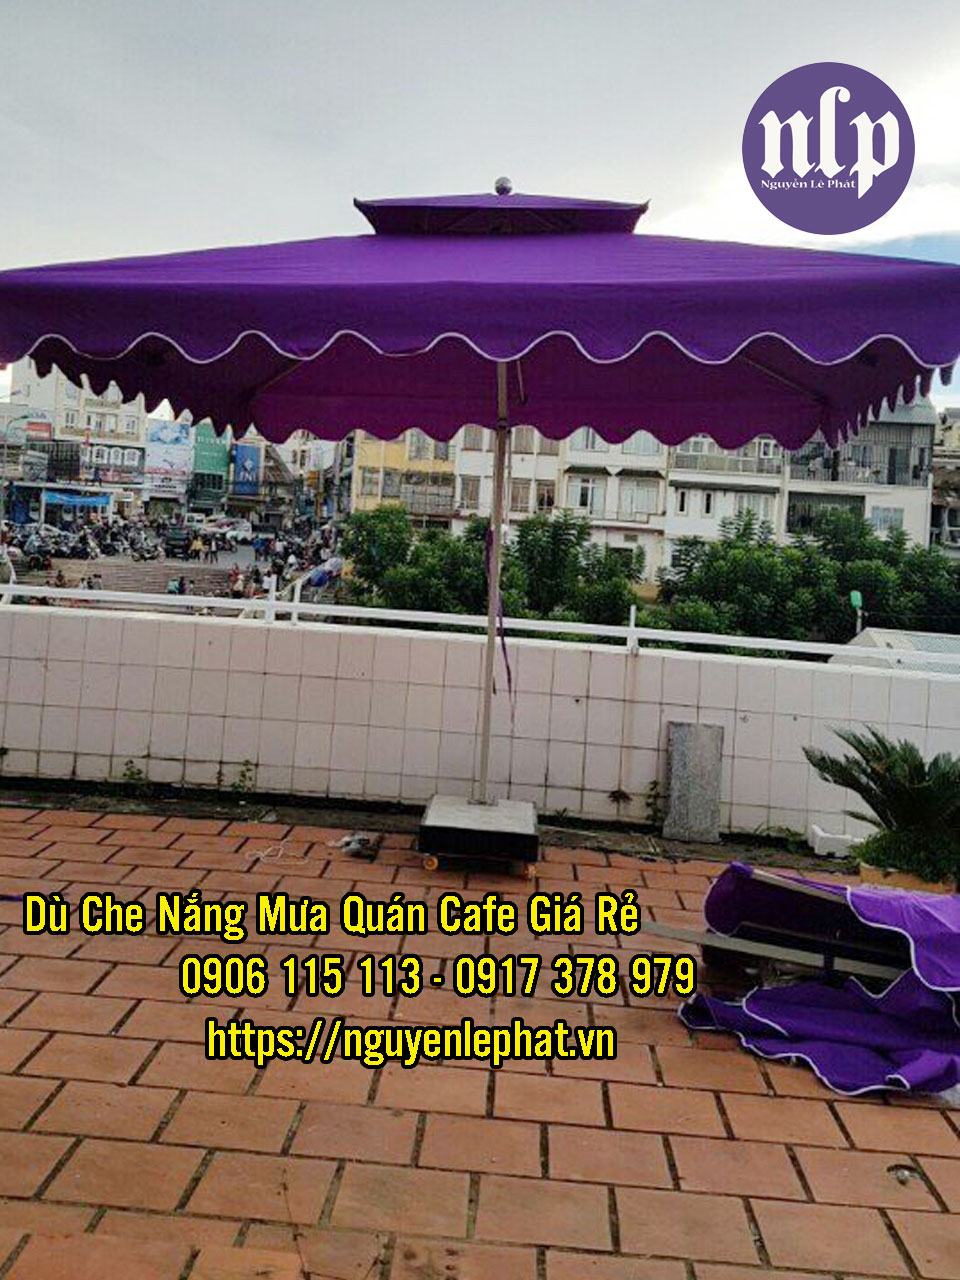 Dù Che Quán Cafe tại Tây Ninh